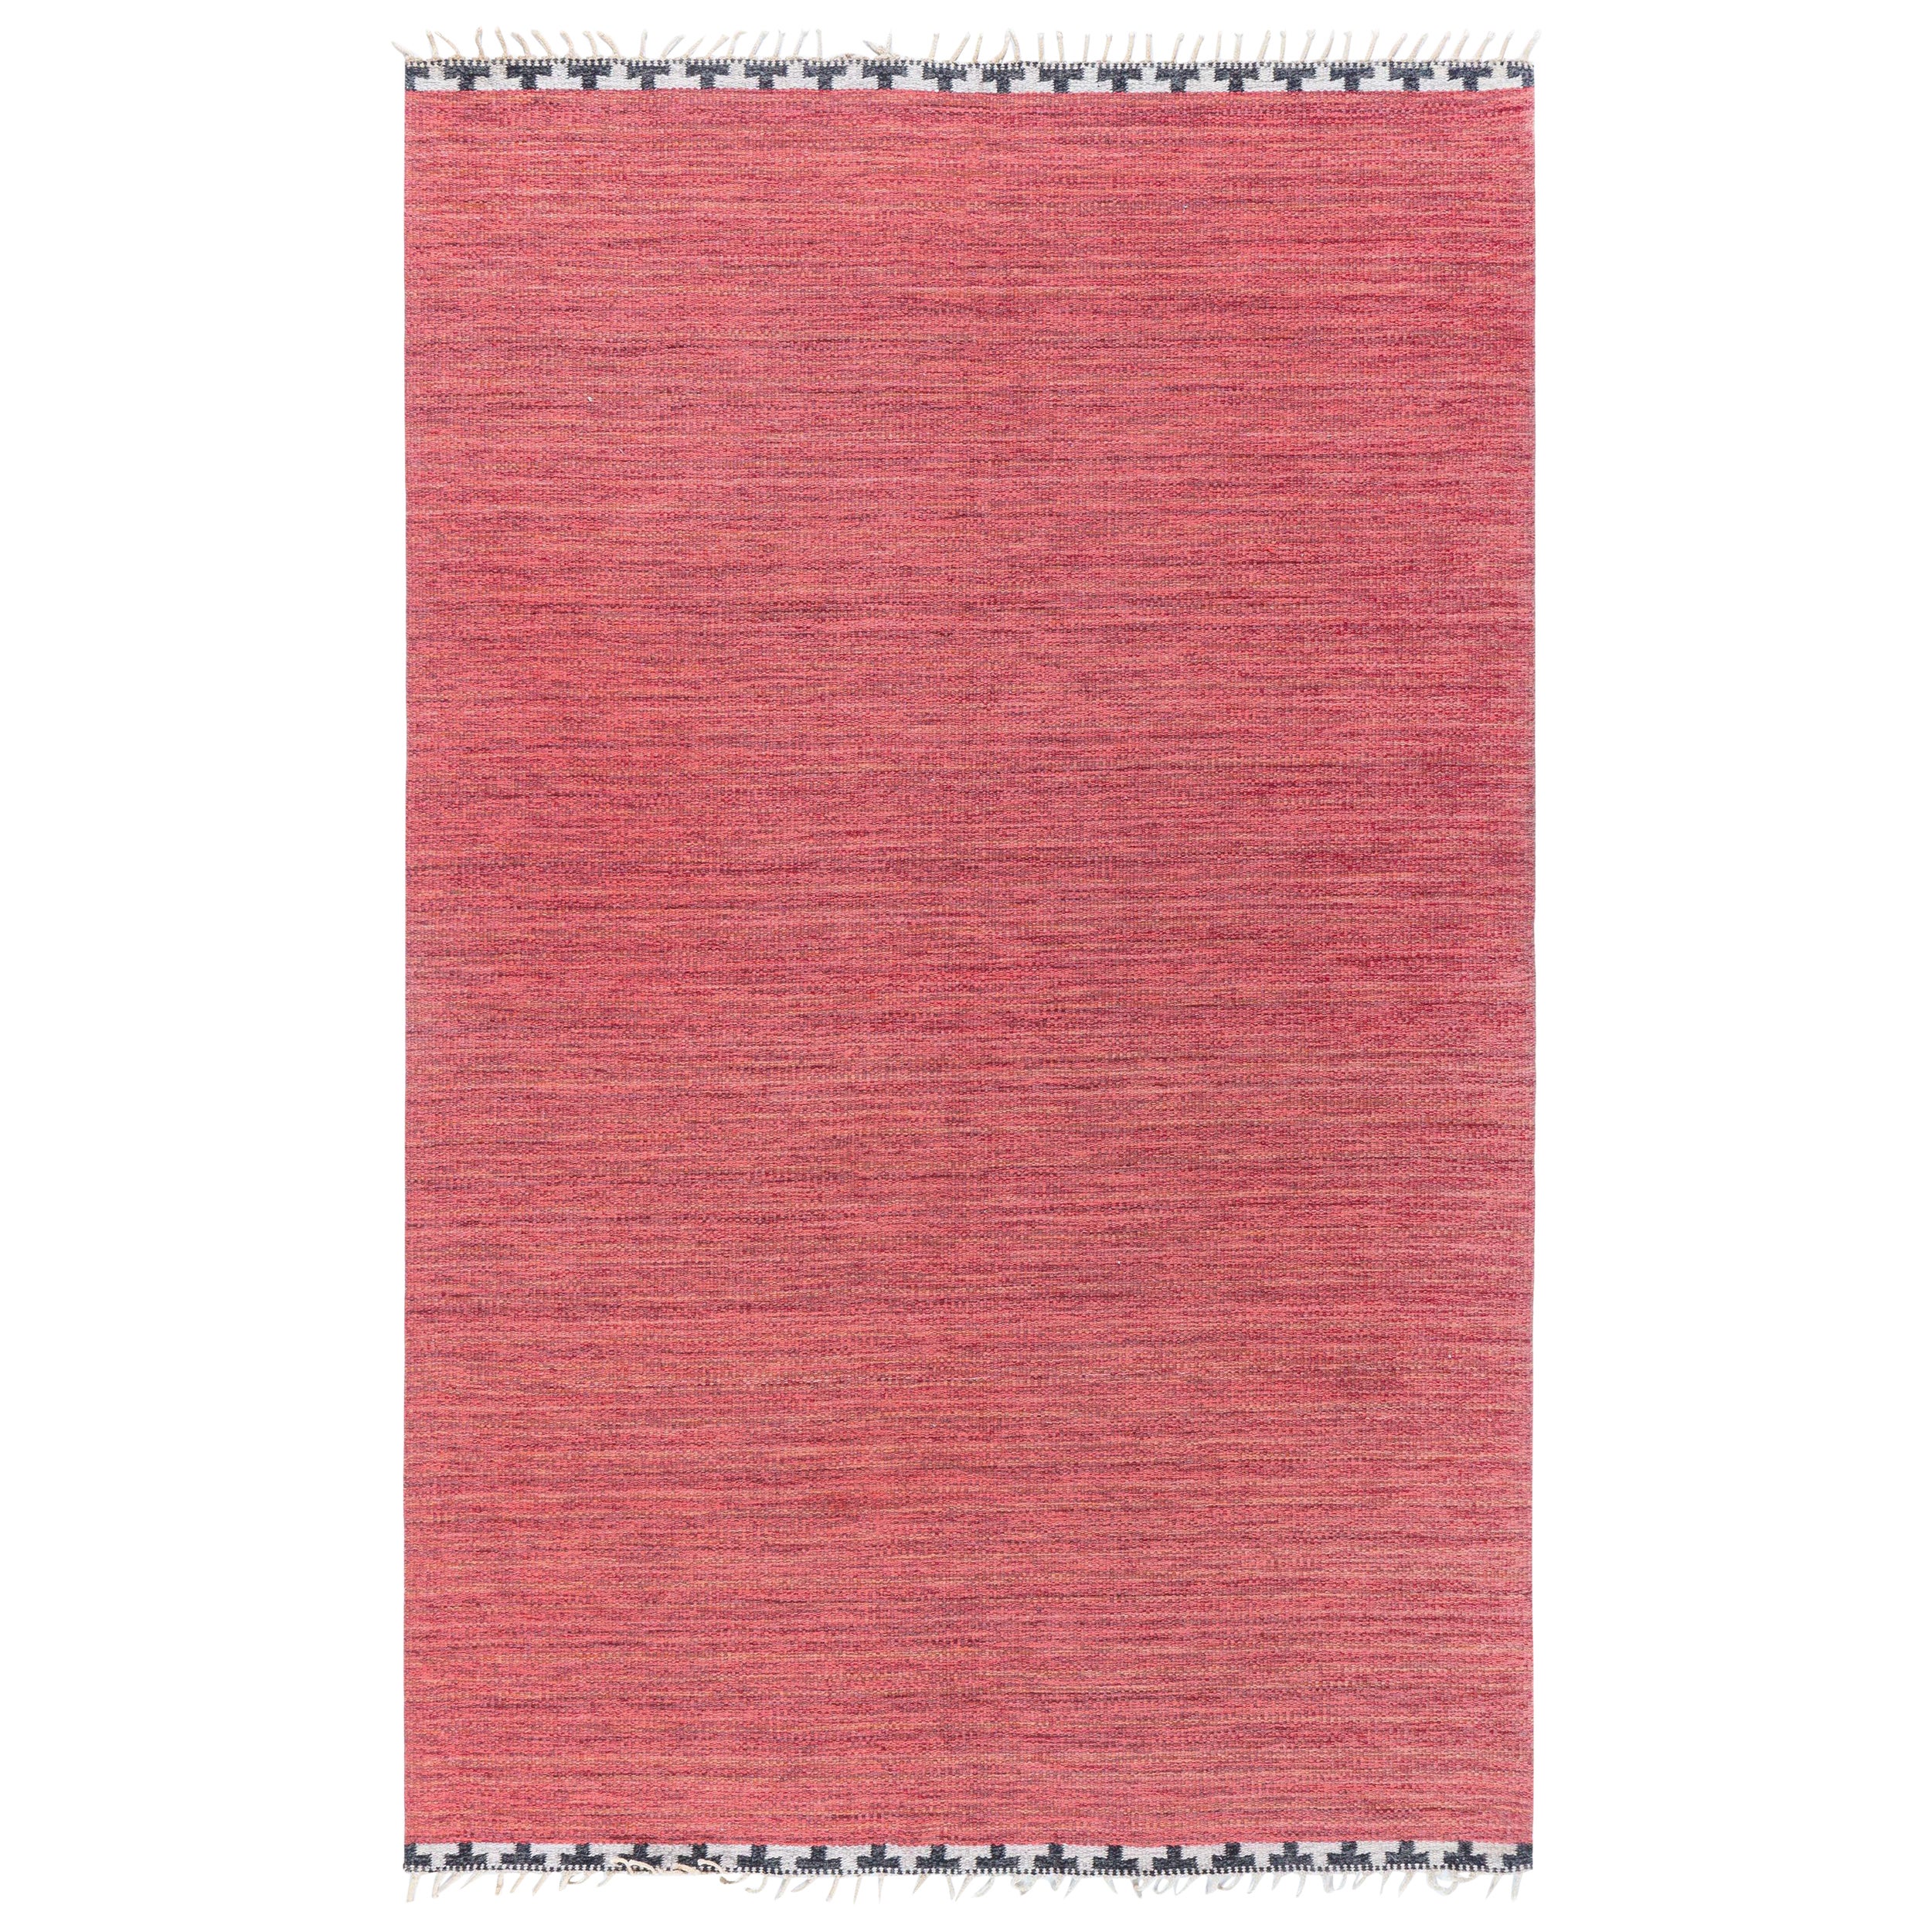 Alter schwedischer roter Flachgewebe-Teppich